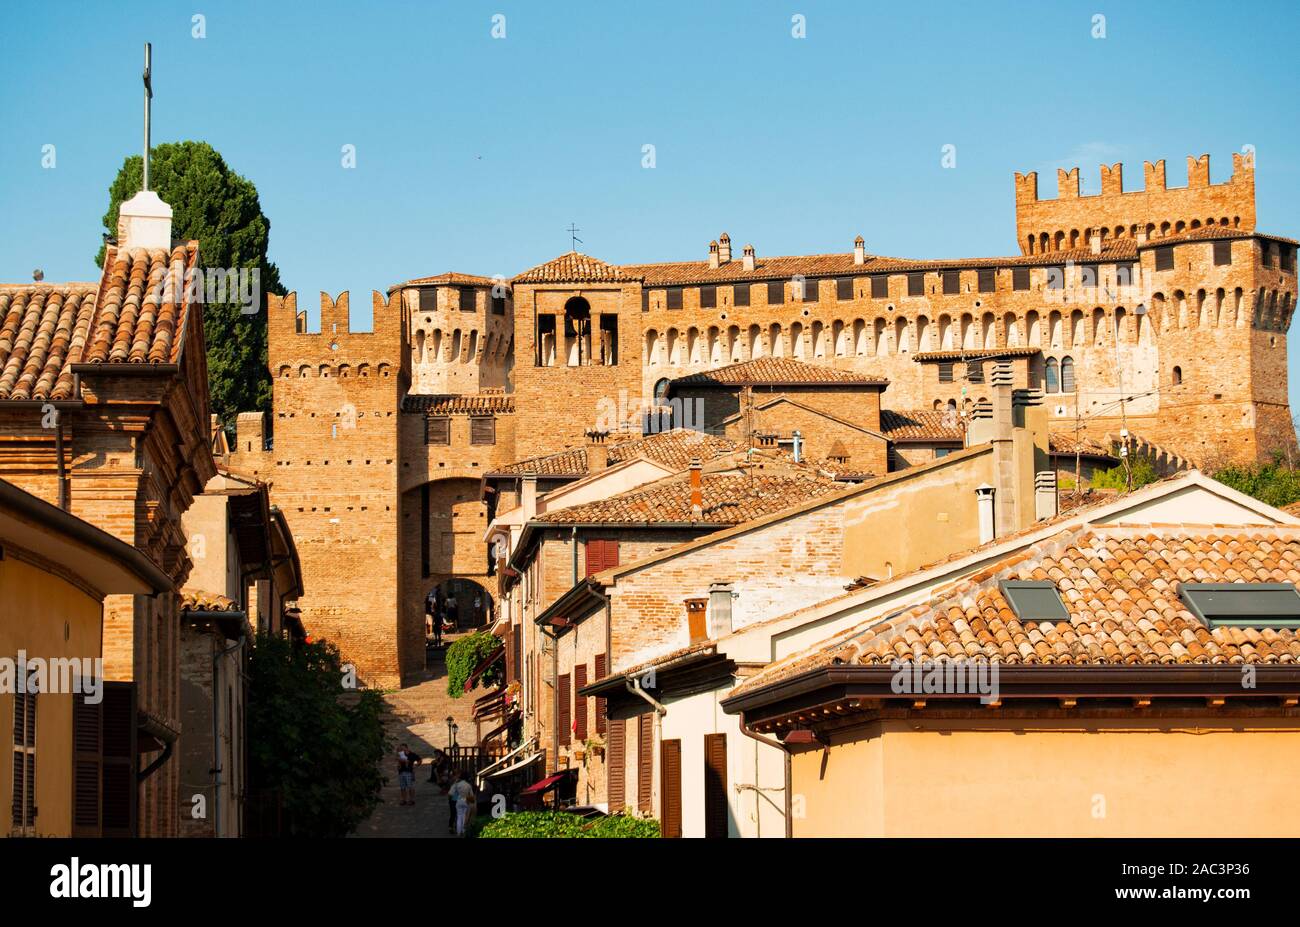 Forteresse de Gradara, village historique medioeval en italien région des Marches. Gradara est l'emplacement de l'épisode de Paolo et Francesca décrit b Banque D'Images